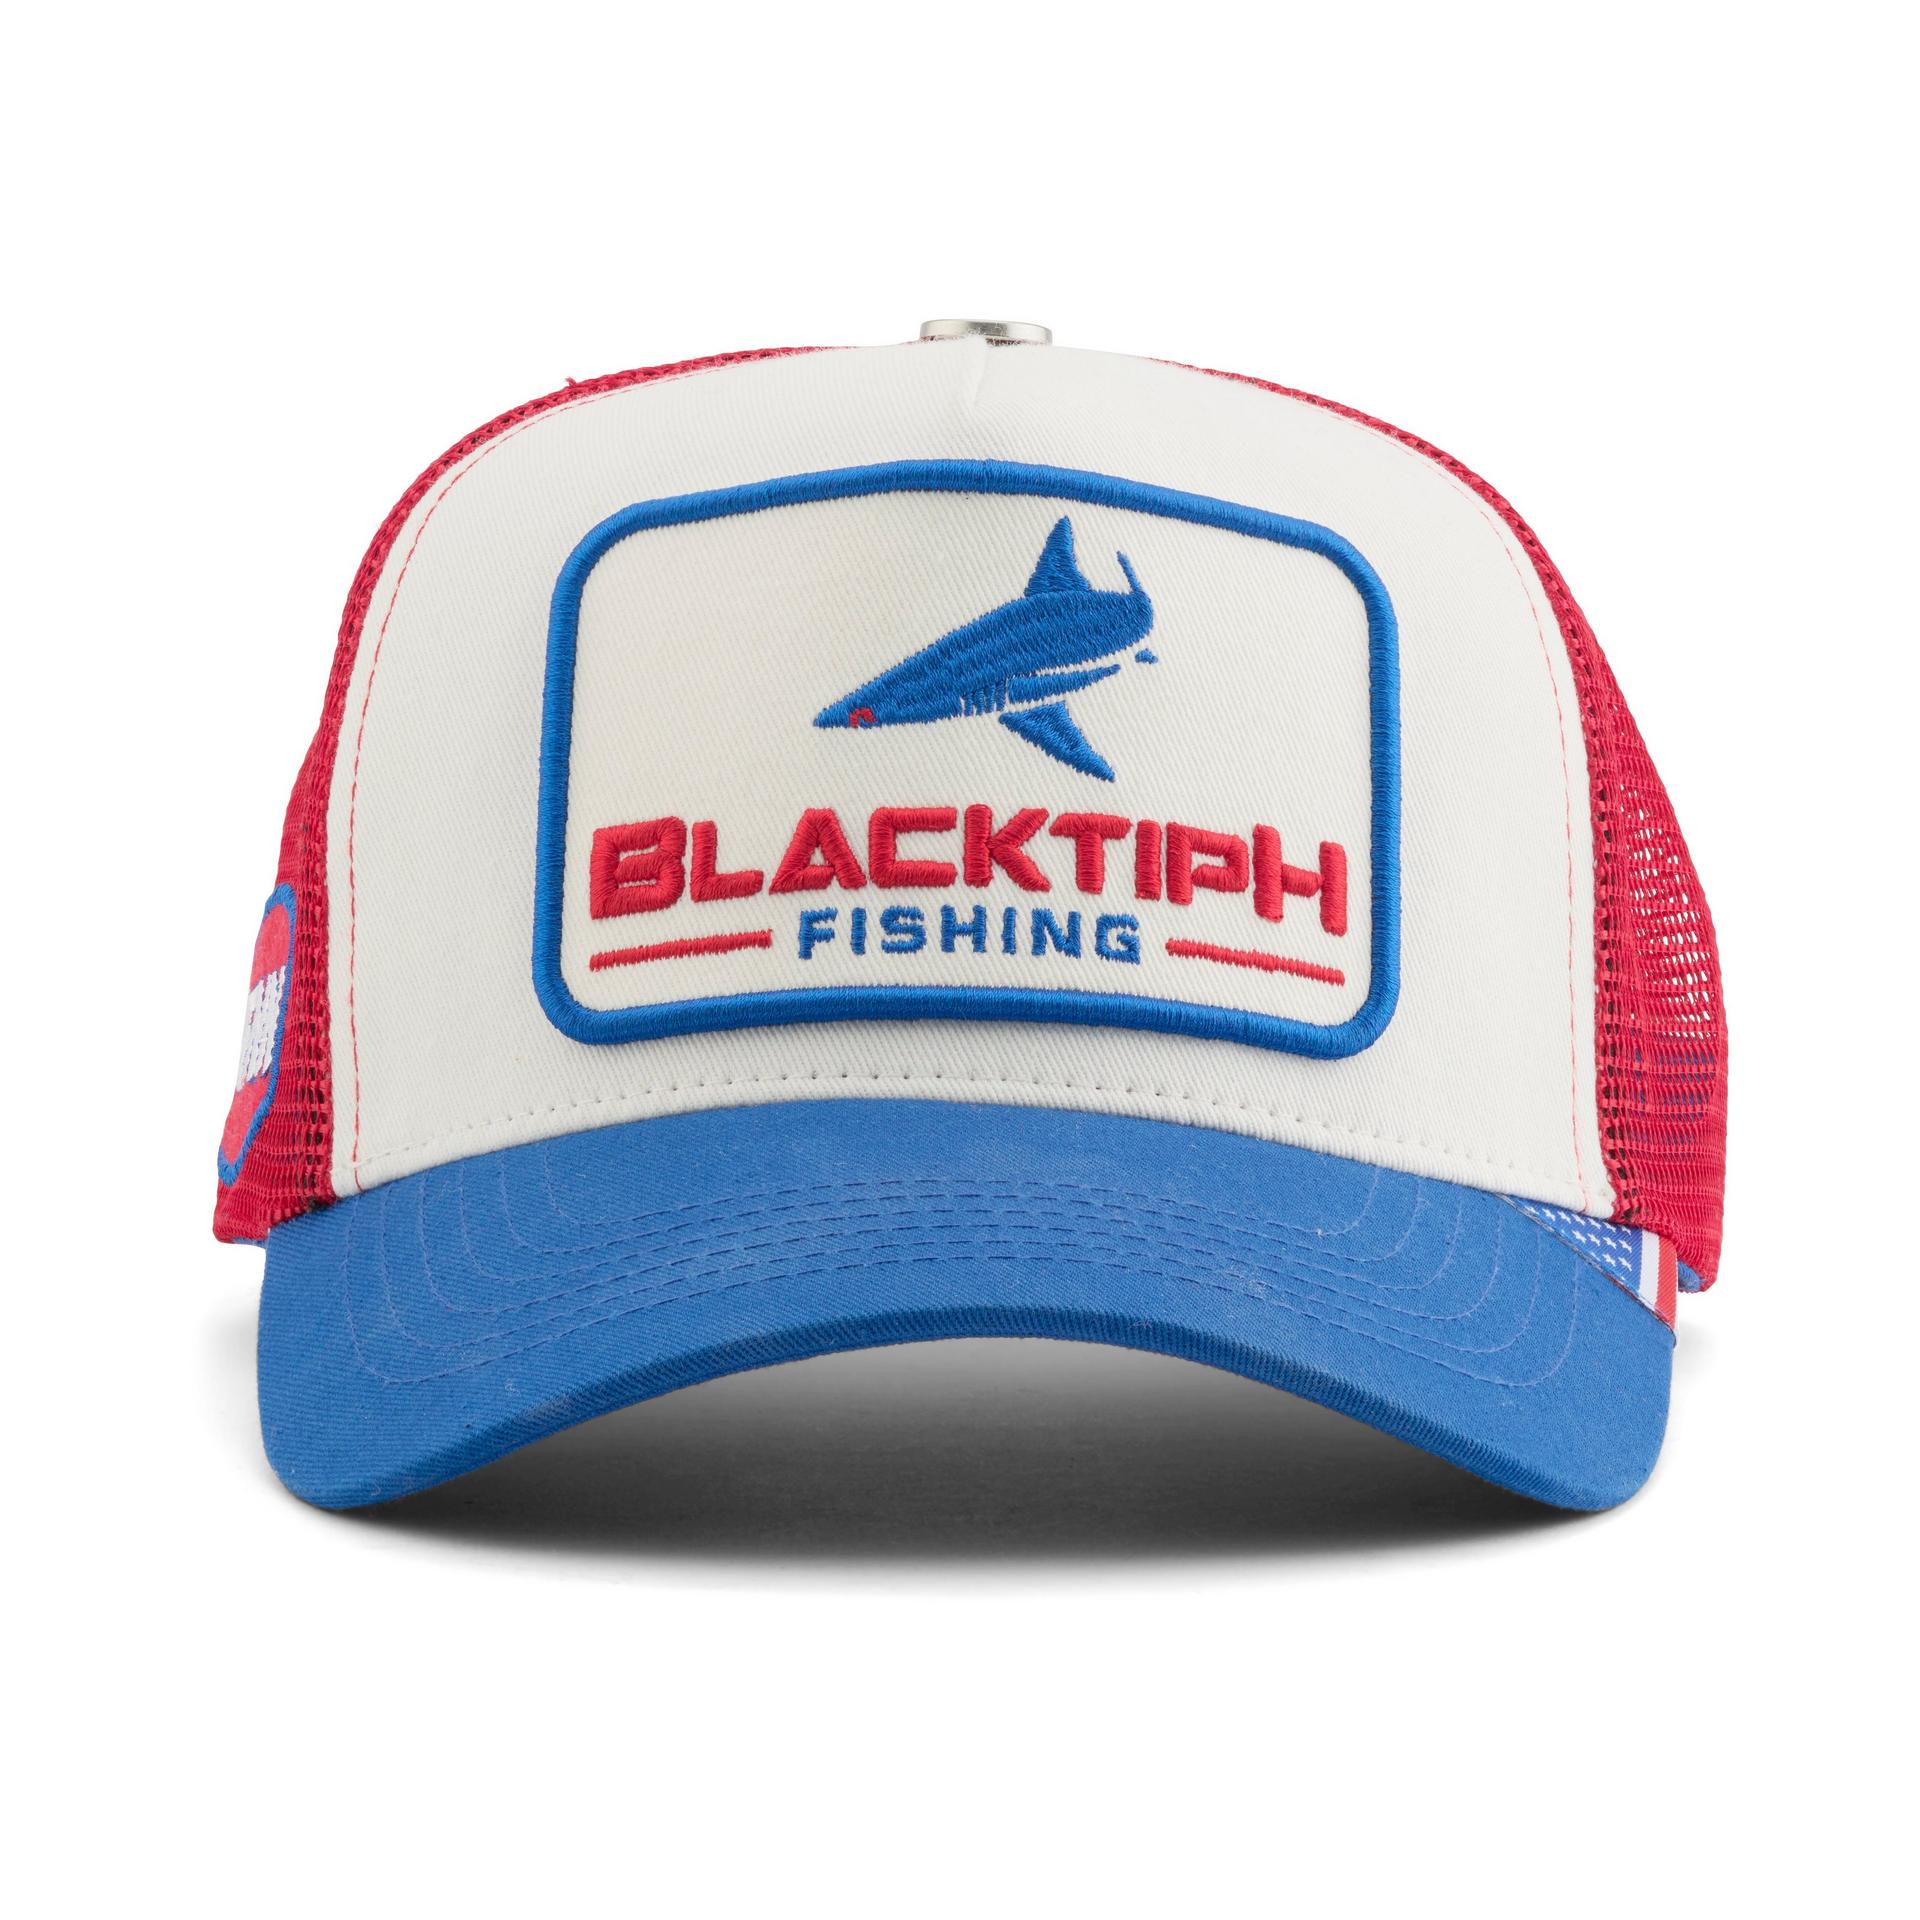 Penn Fishing Reels Baseball Cap